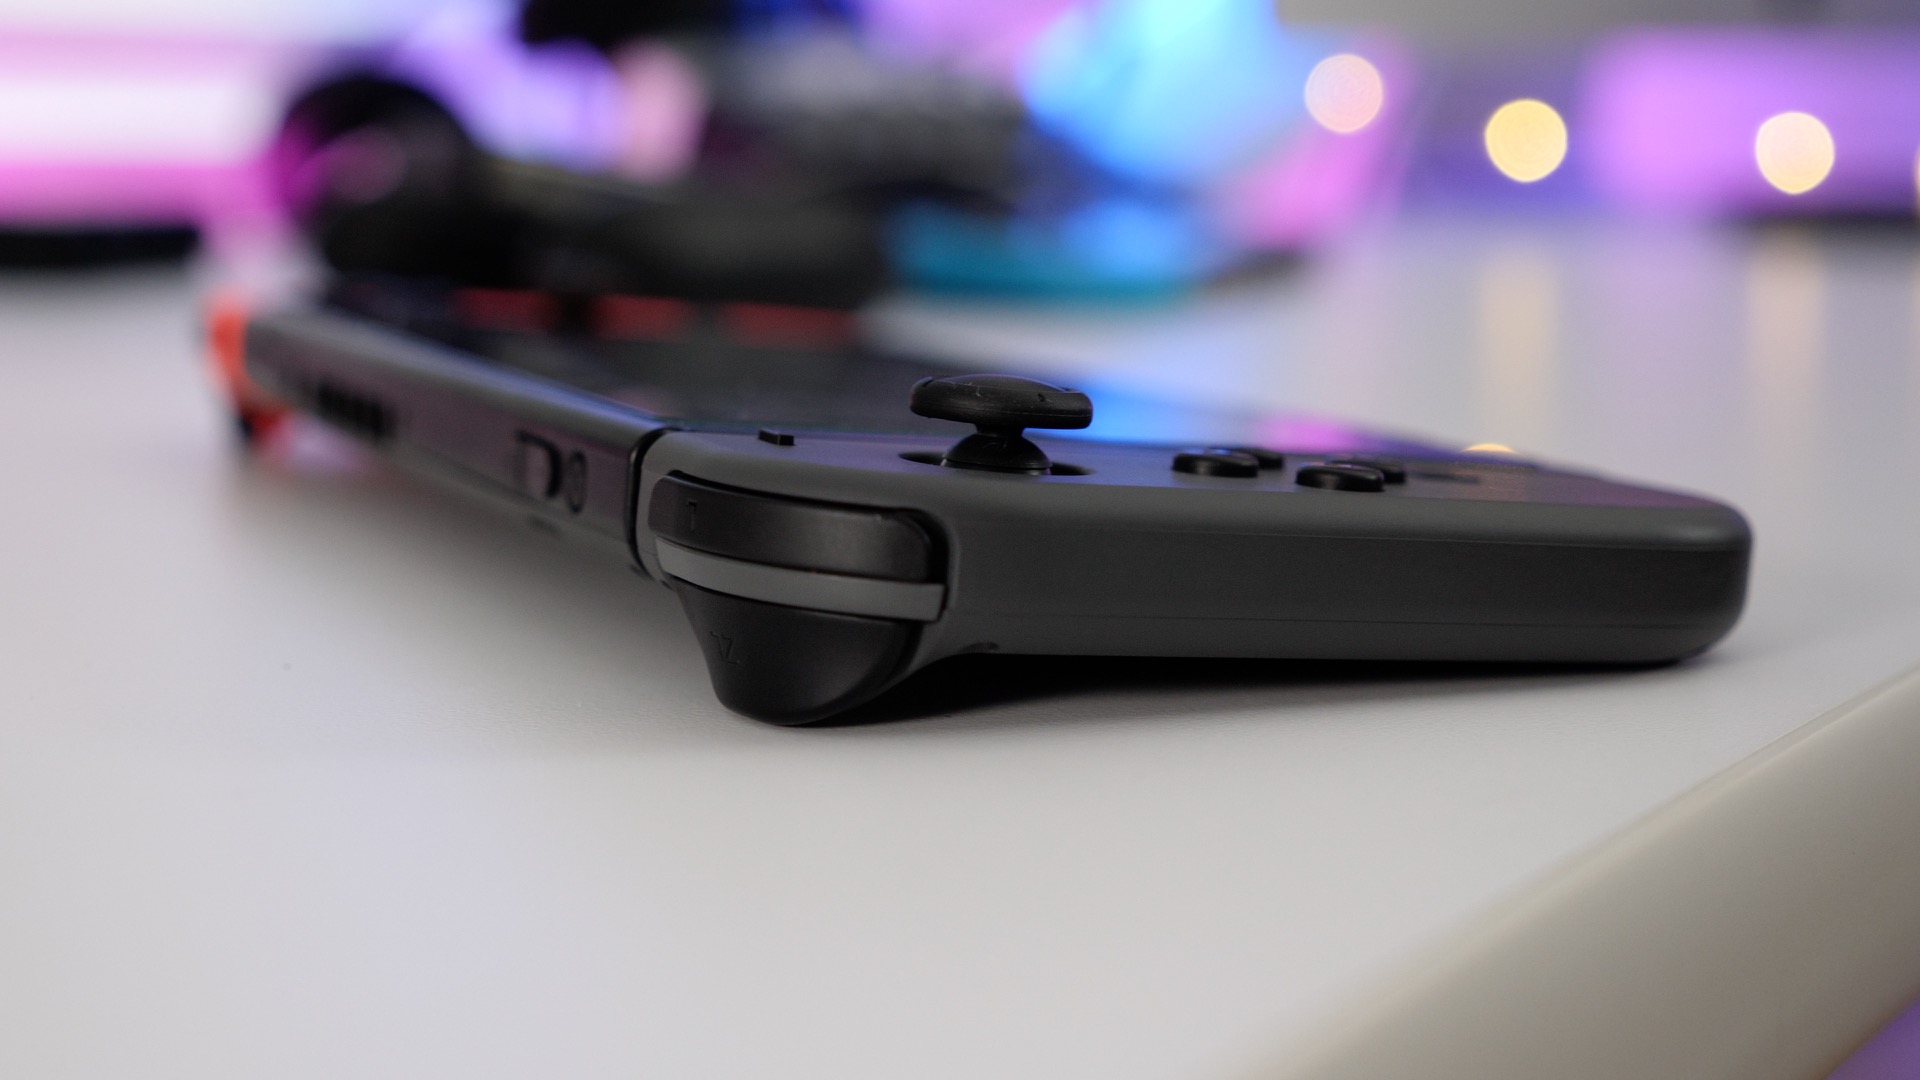 Star Fox Developer Wants to Port Wii U Entry to Nintendo Switch